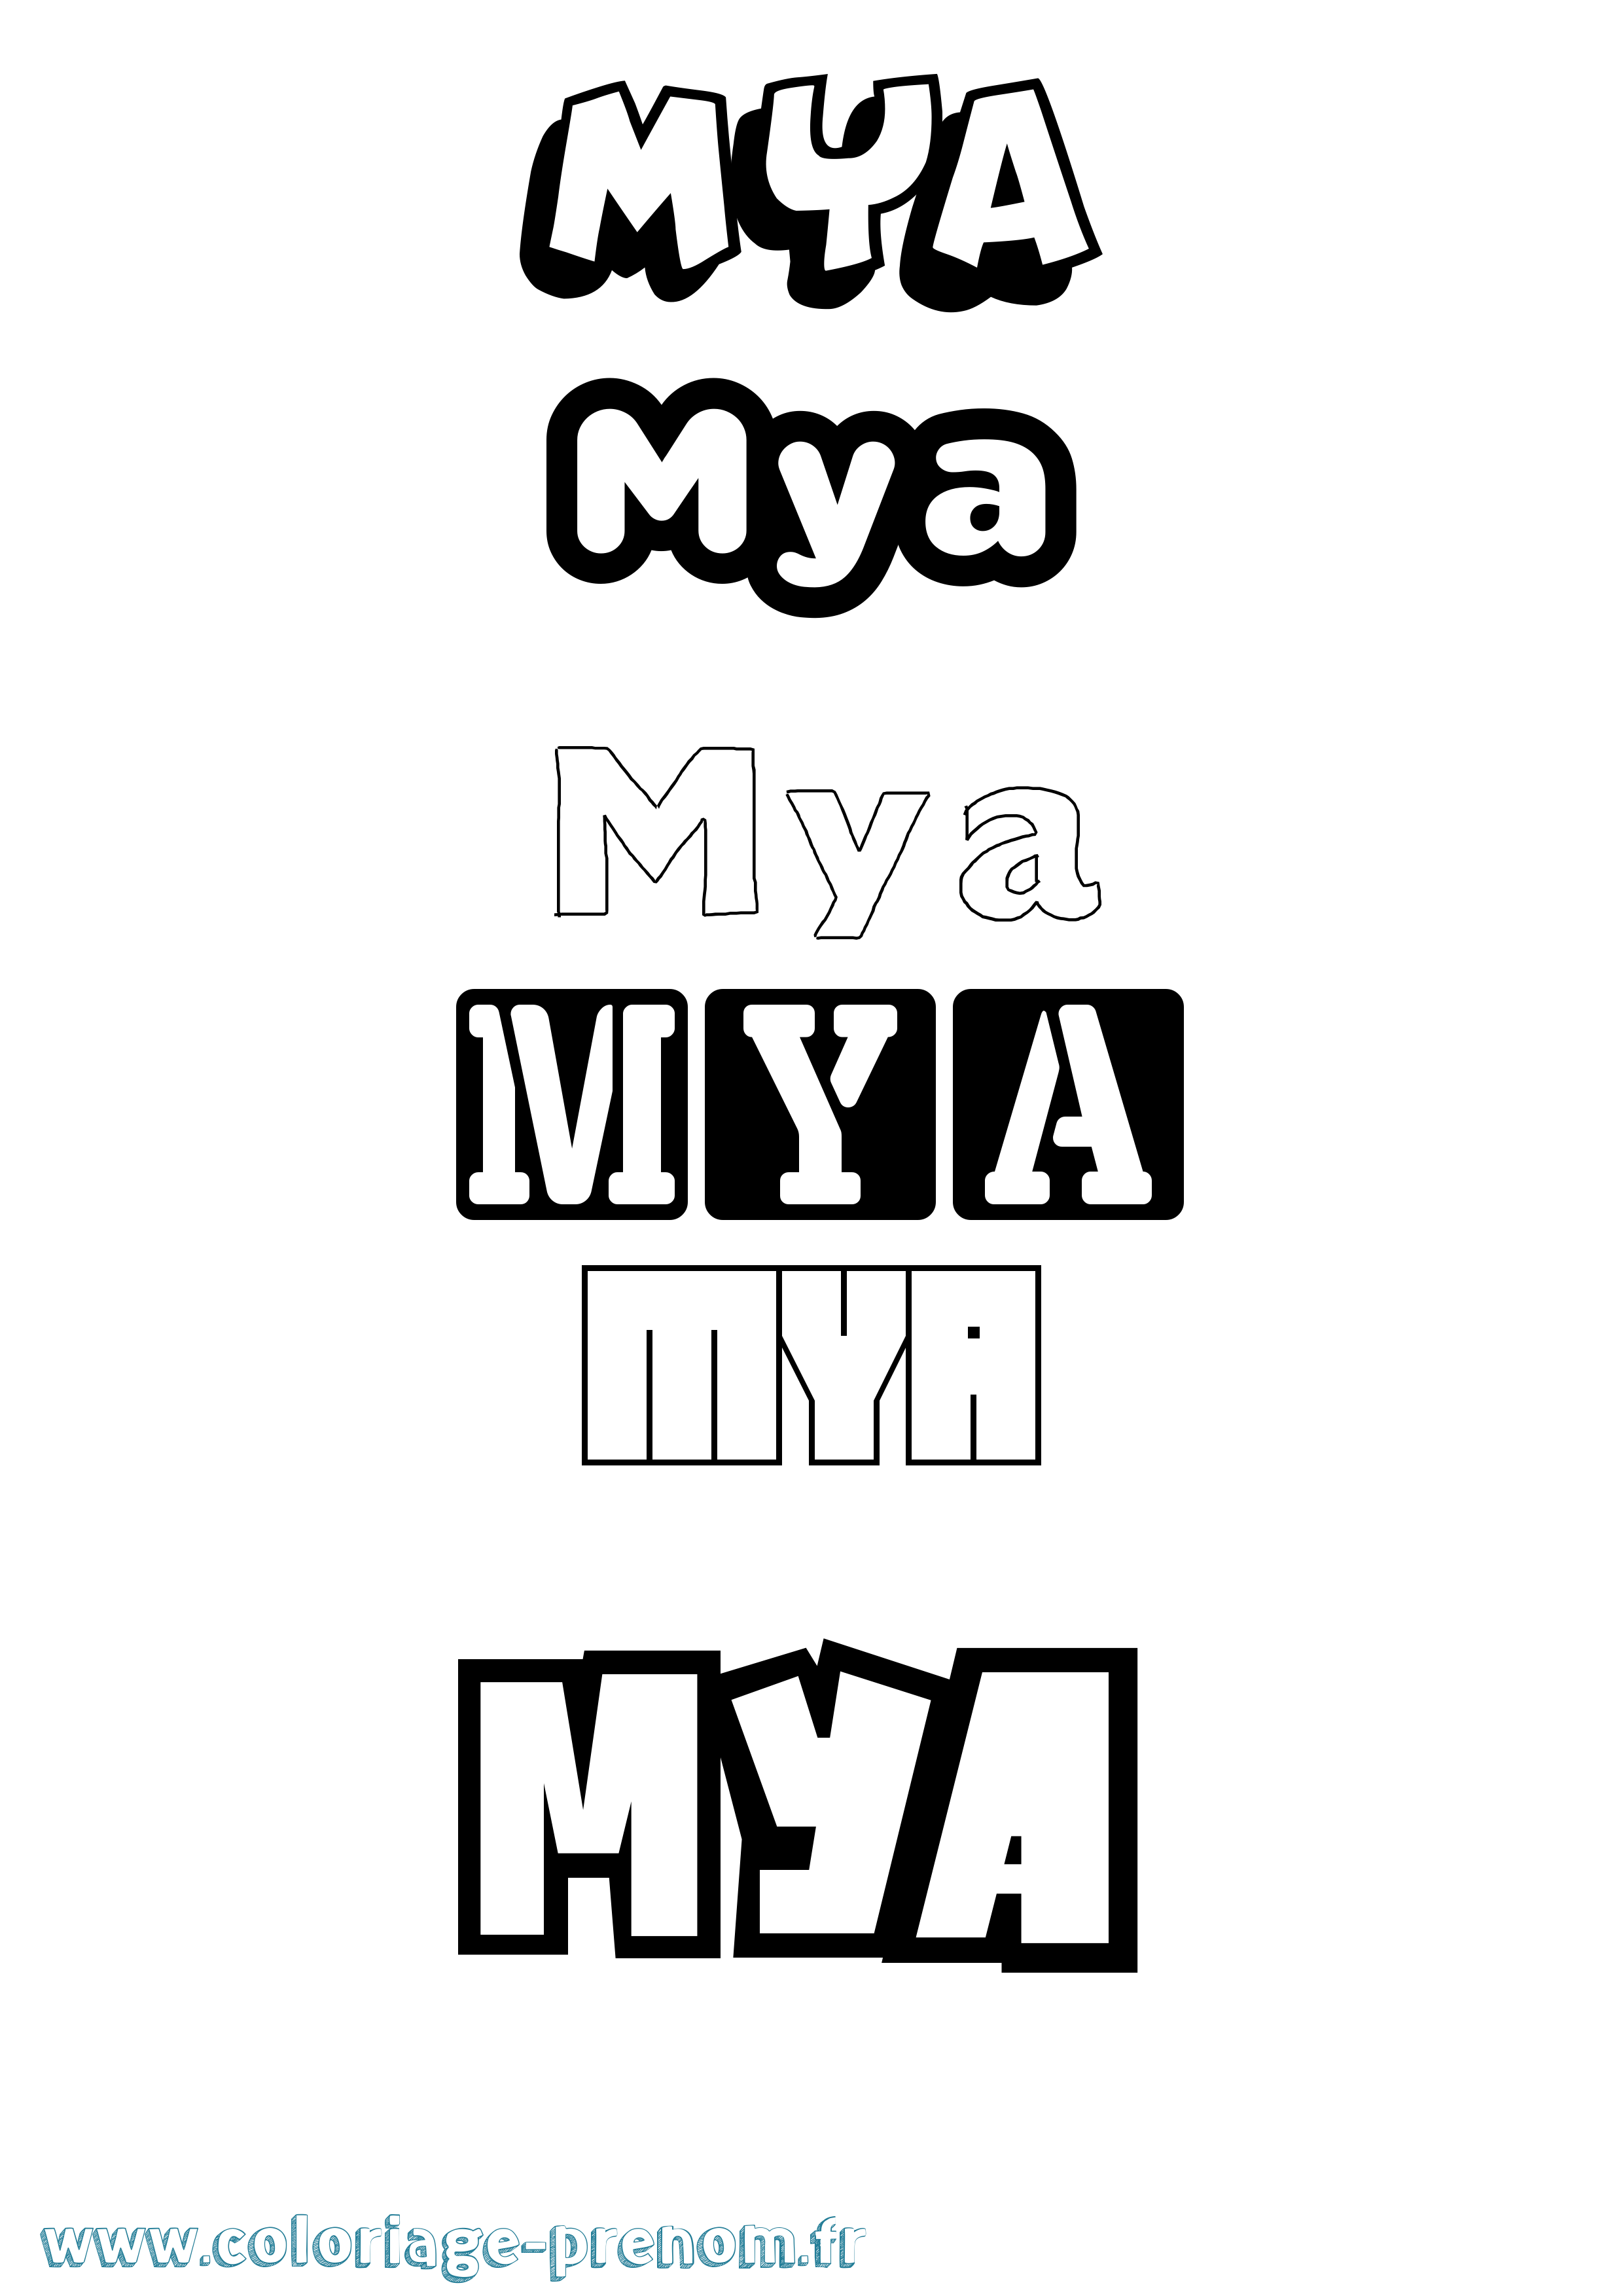 Coloriage prénom Mya